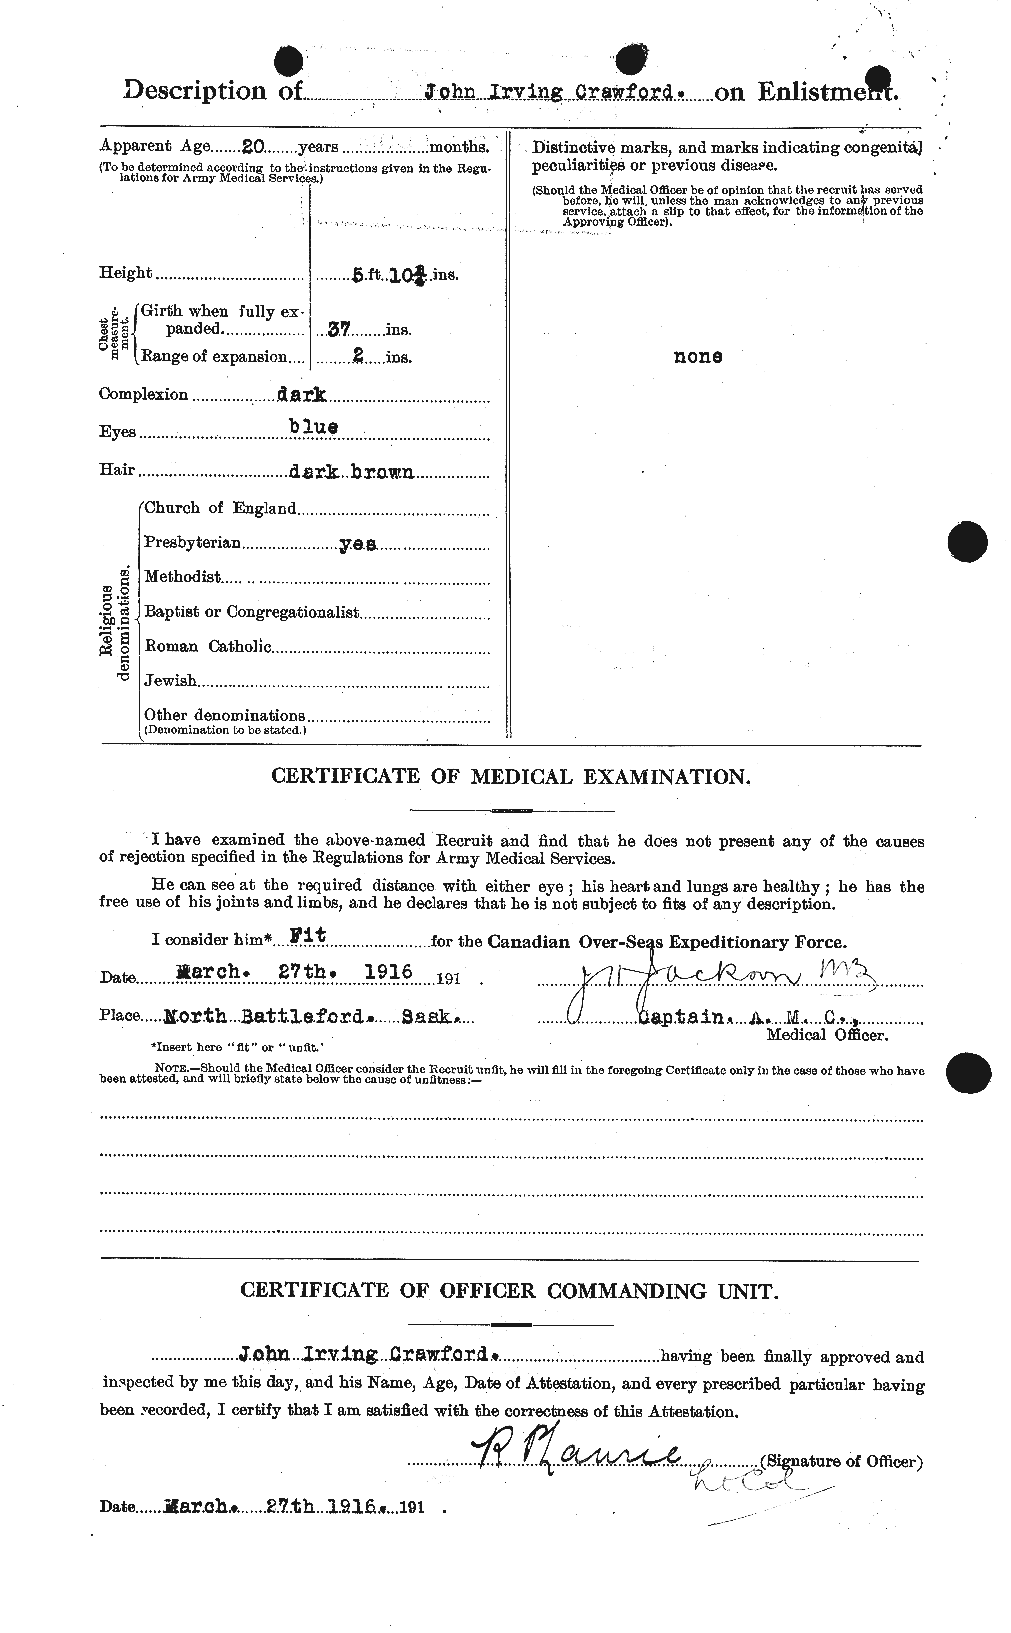 Dossiers du Personnel de la Première Guerre mondiale - CEC 062425b